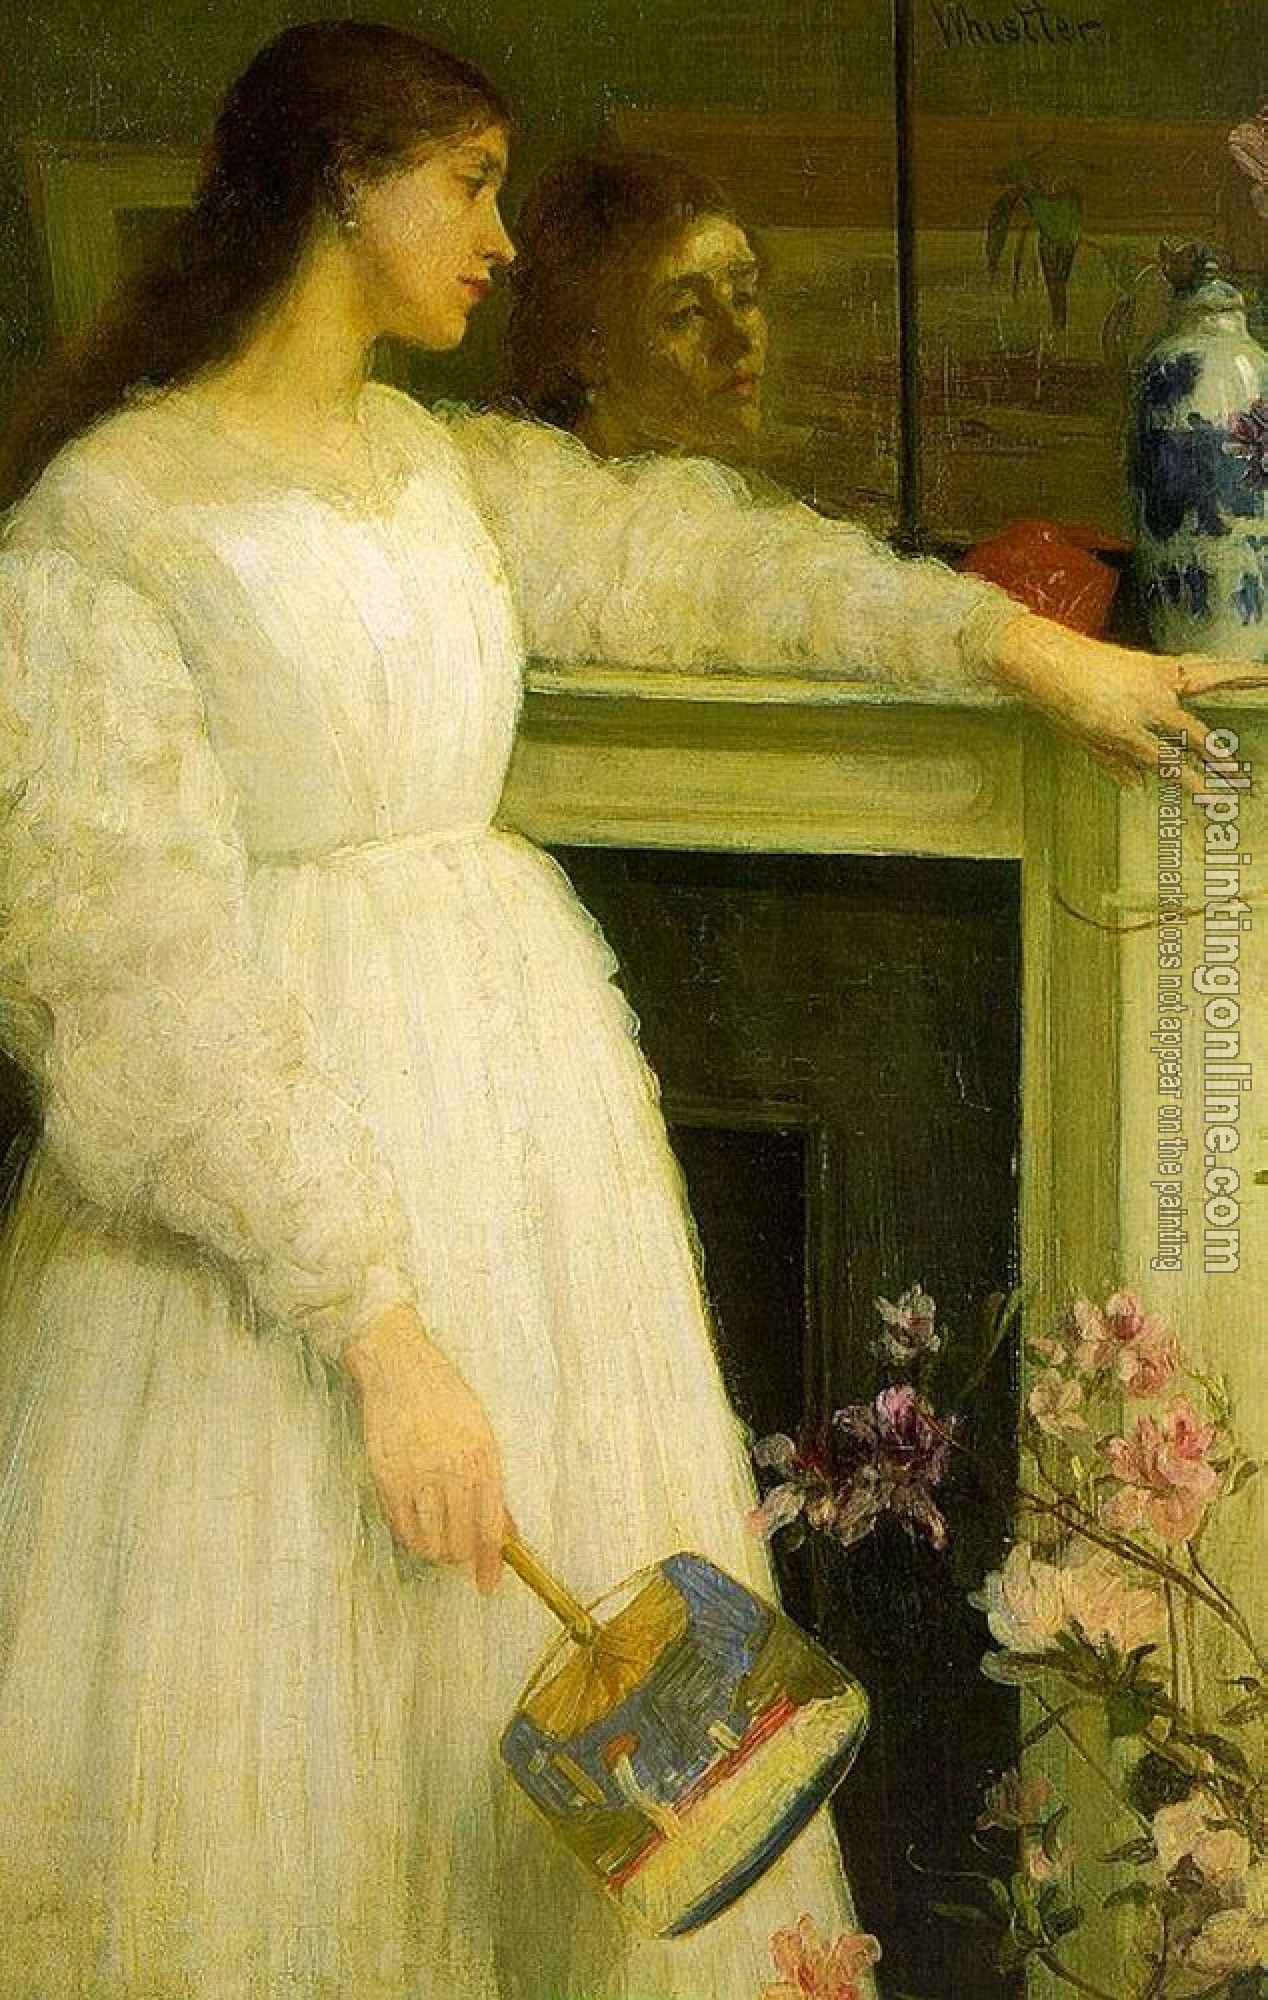 Whistler, James Abbottb McNeill - The Little White Girl